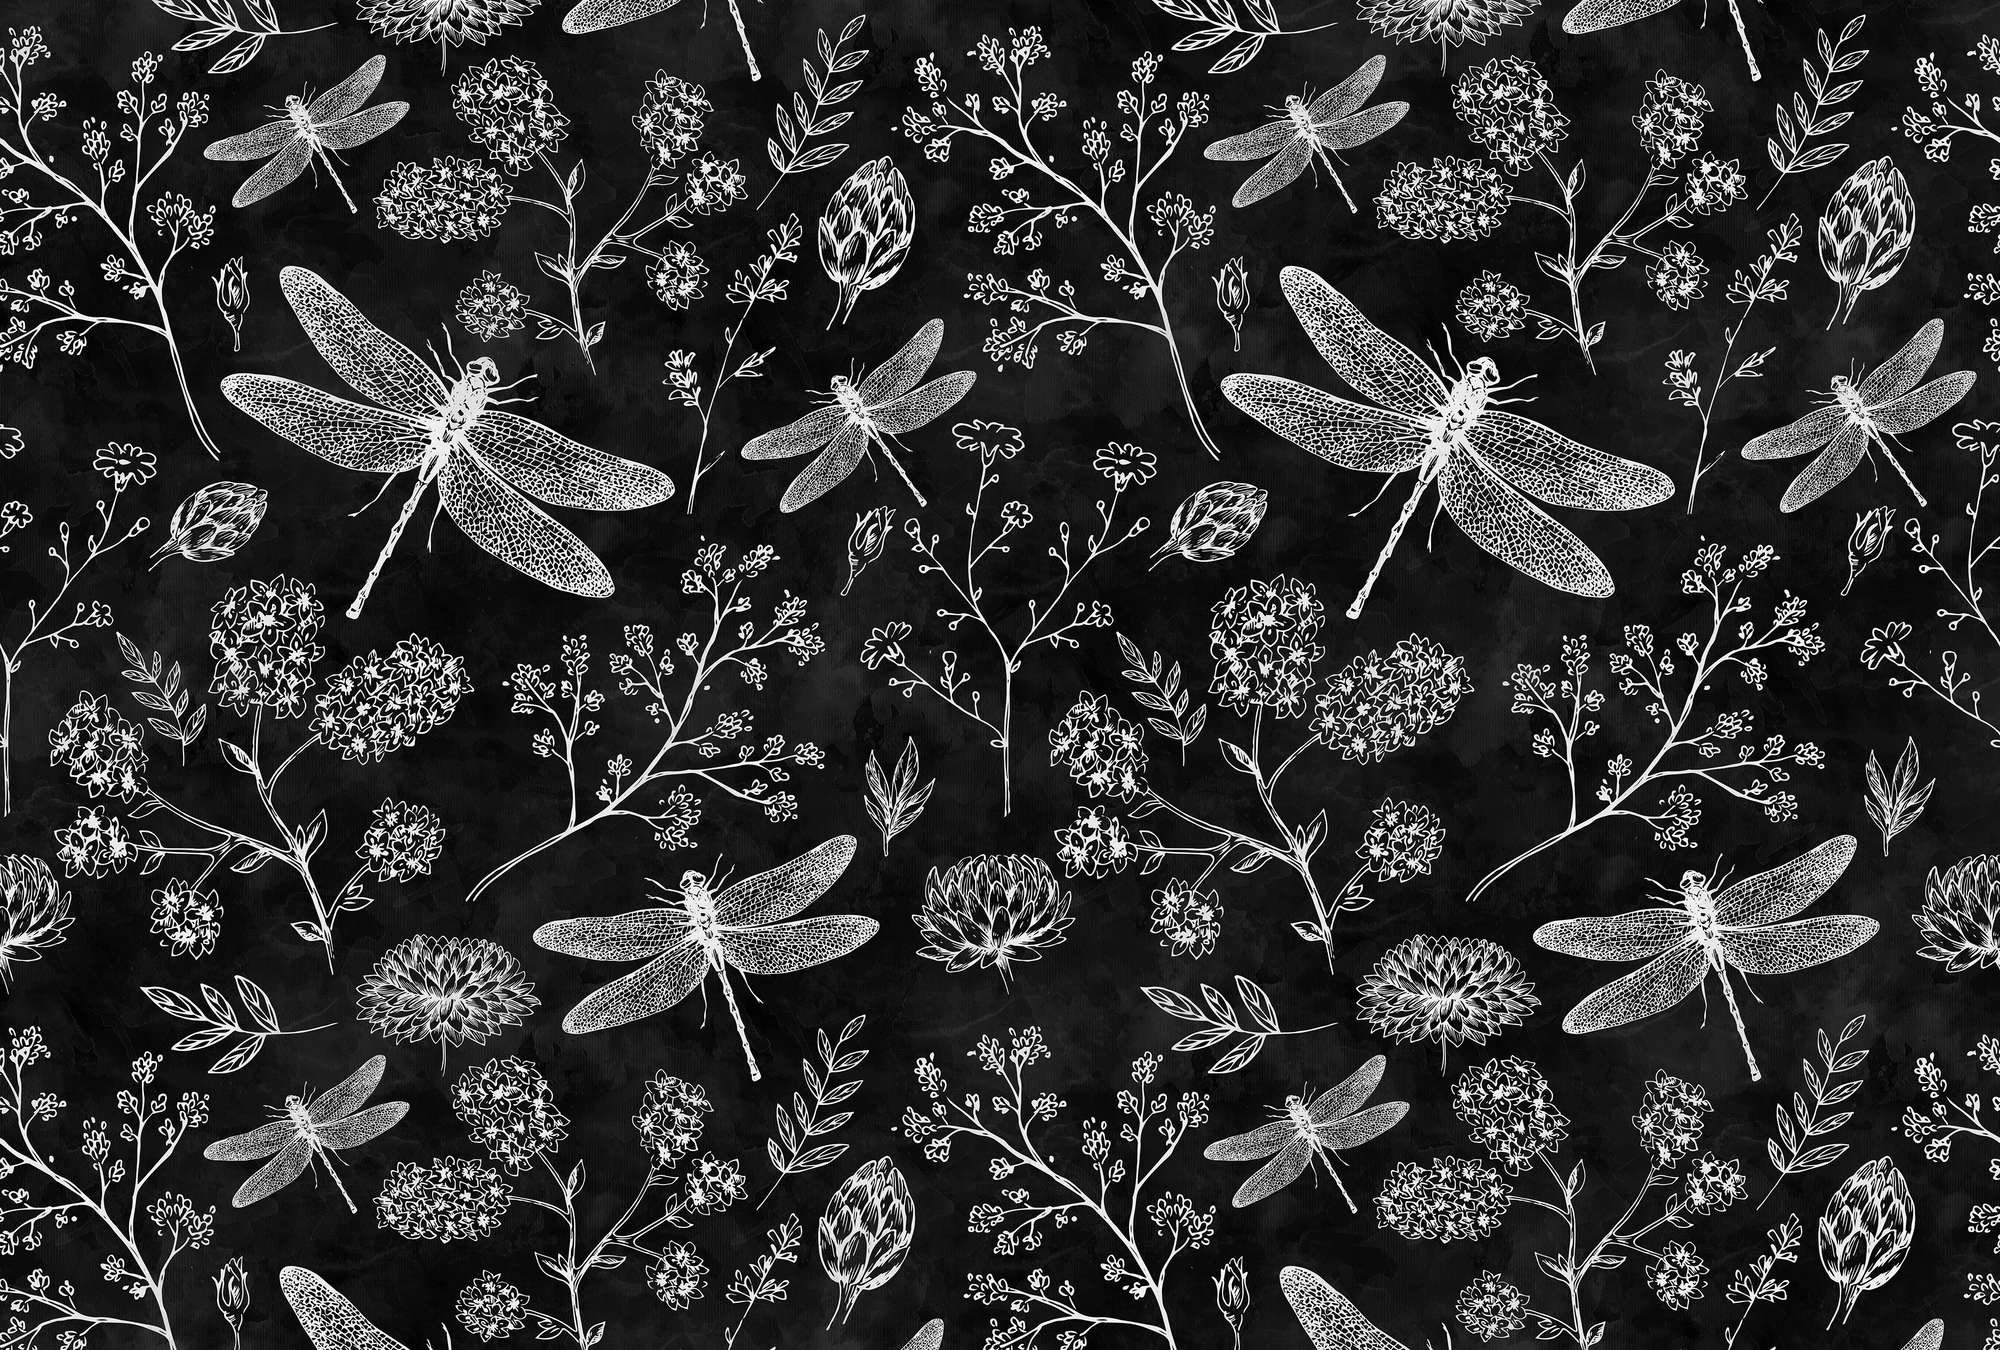             Zwart-wit fotobehang libellen & bloemen
        